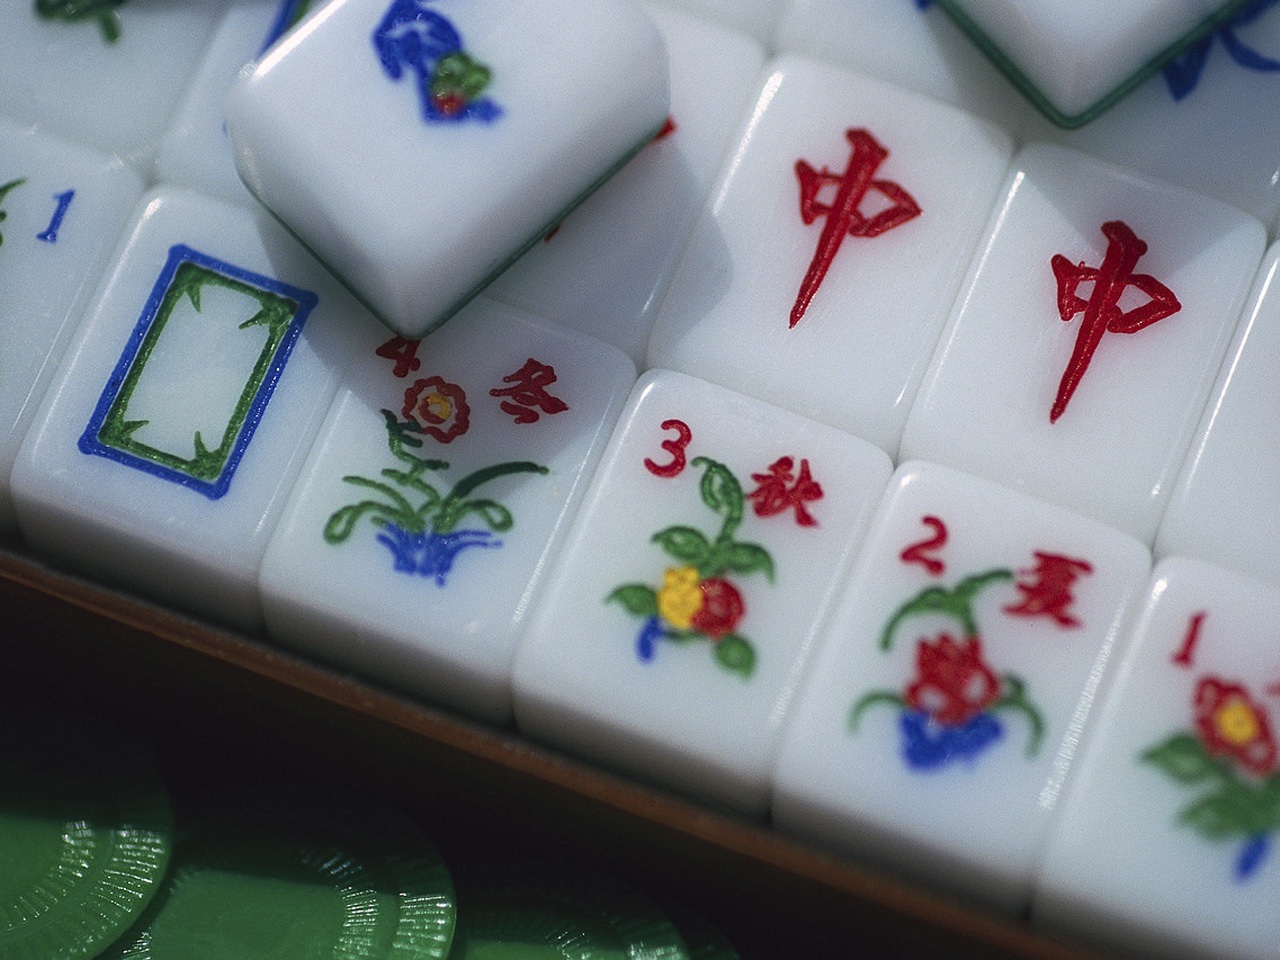 game, mahjong